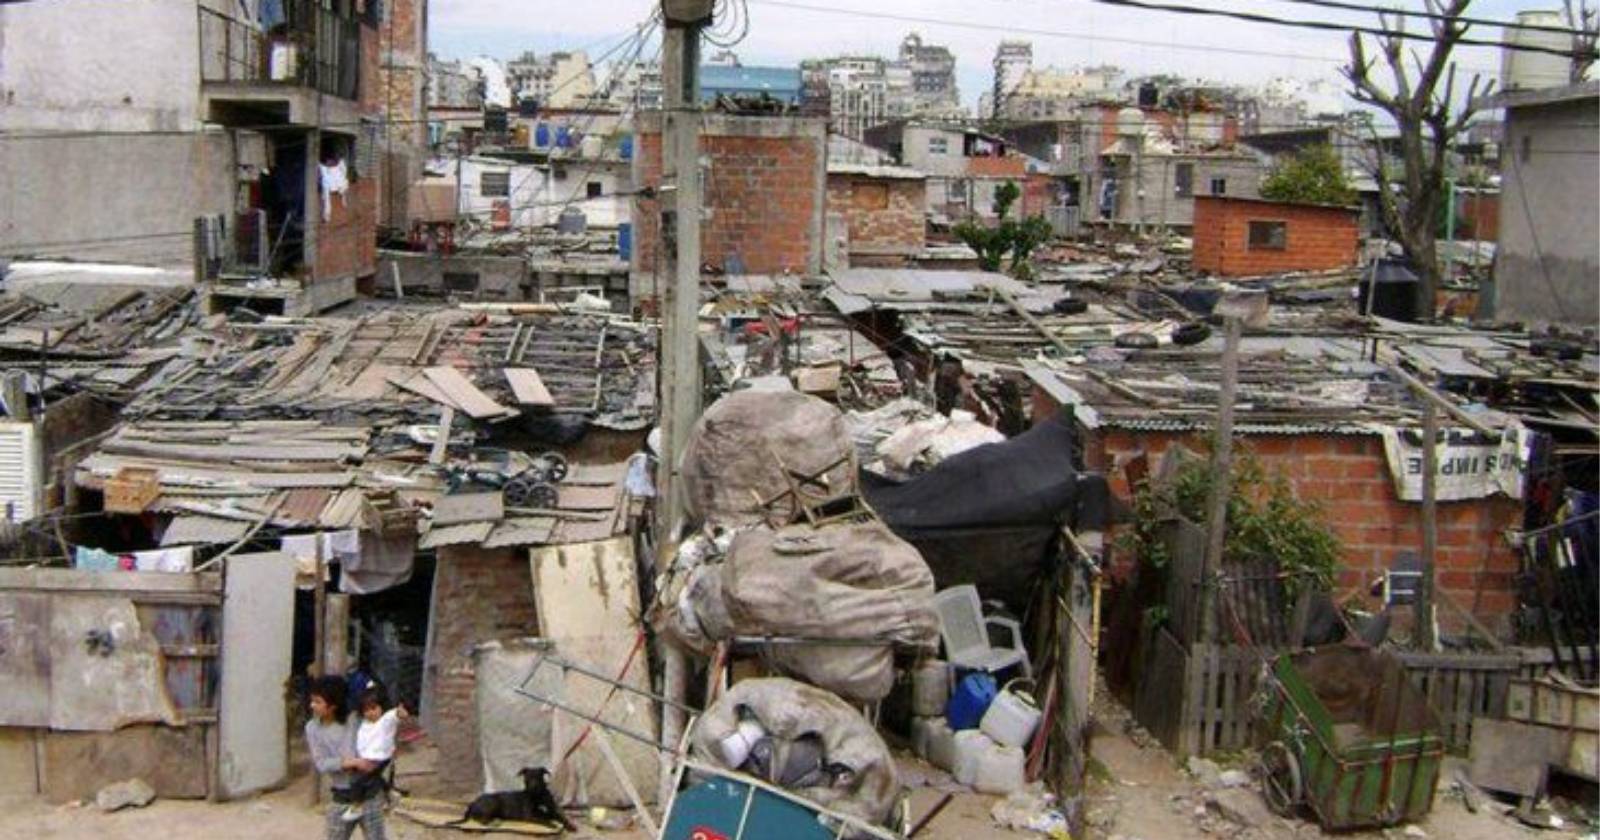 pobreza en Argentina